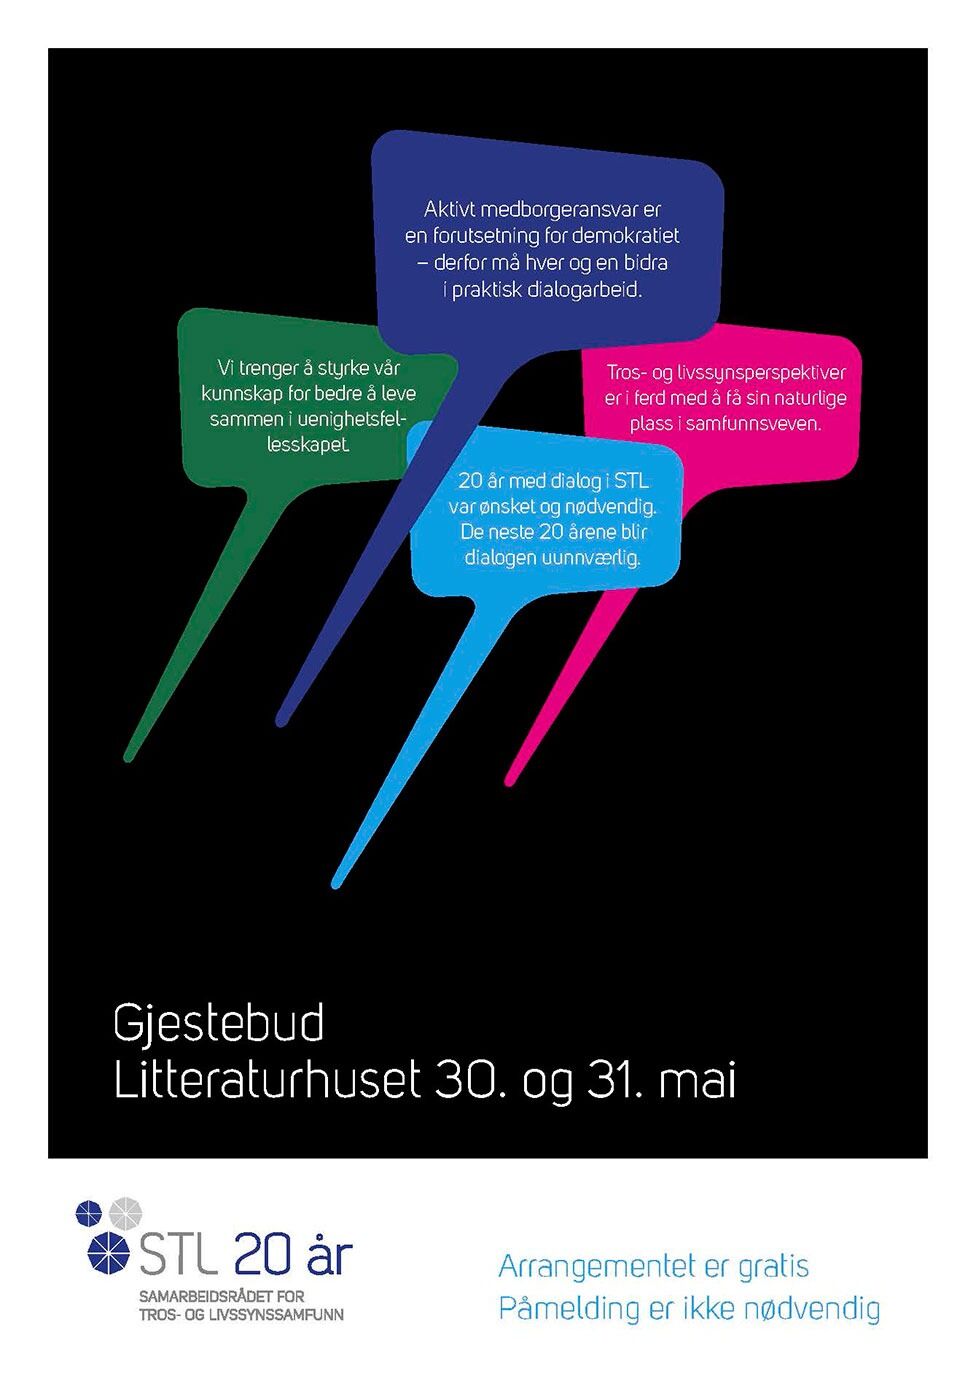 Samarbeidsrådet for tros- og livssynssamfunn (STL) feirer 20 år denne uka med et seminar på Litteraturhuset i Oslo.